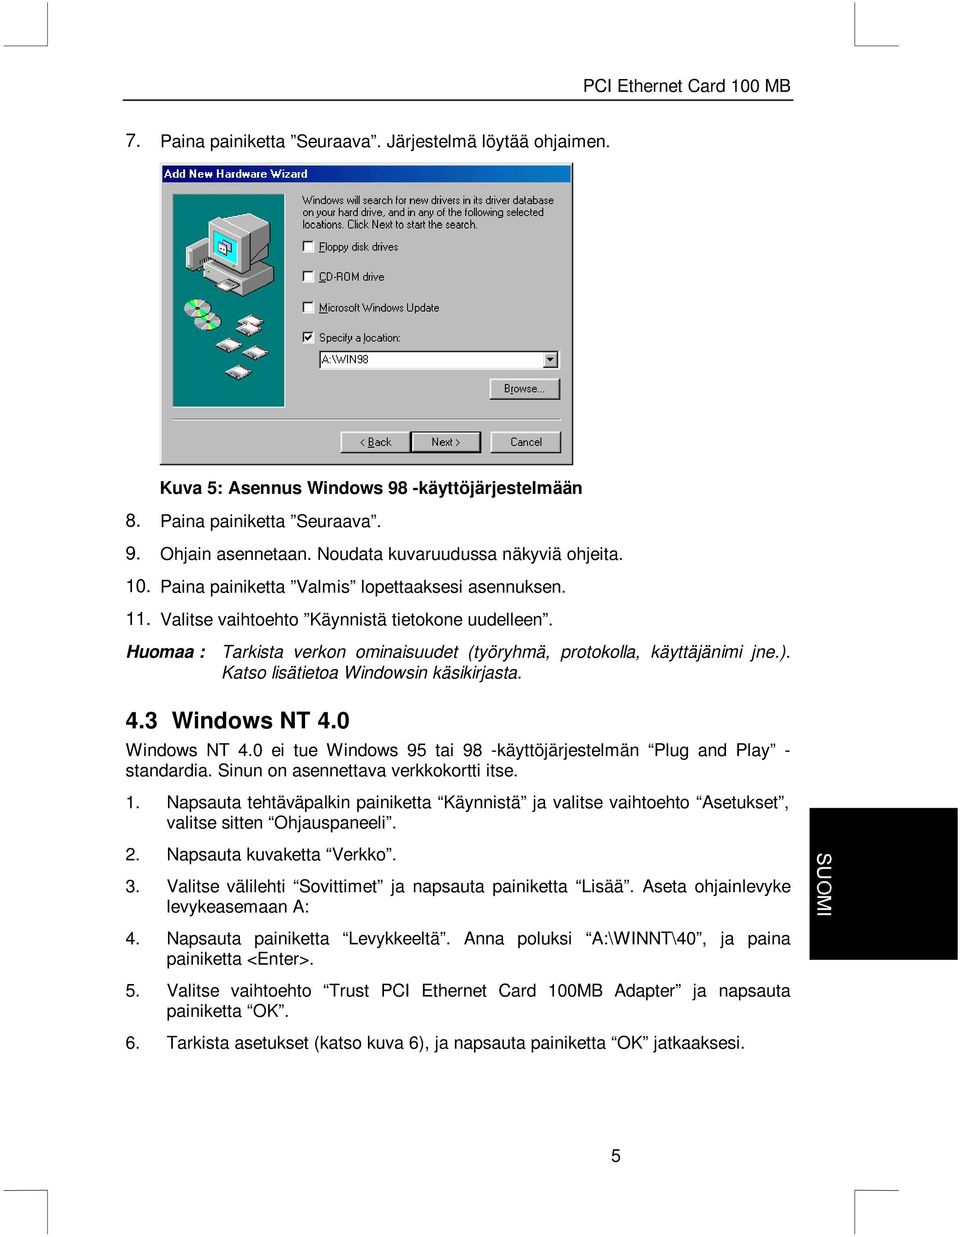 Katso lisätietoa Windowsin käsikirjasta. 4.3 Windows NT 4.0 Windows NT 4.0 ei tue Windows 95 tai 98 -käyttöjärjestelmän Plug and Play - standardia. Sinun on asennettava verkkokortti itse. 1.